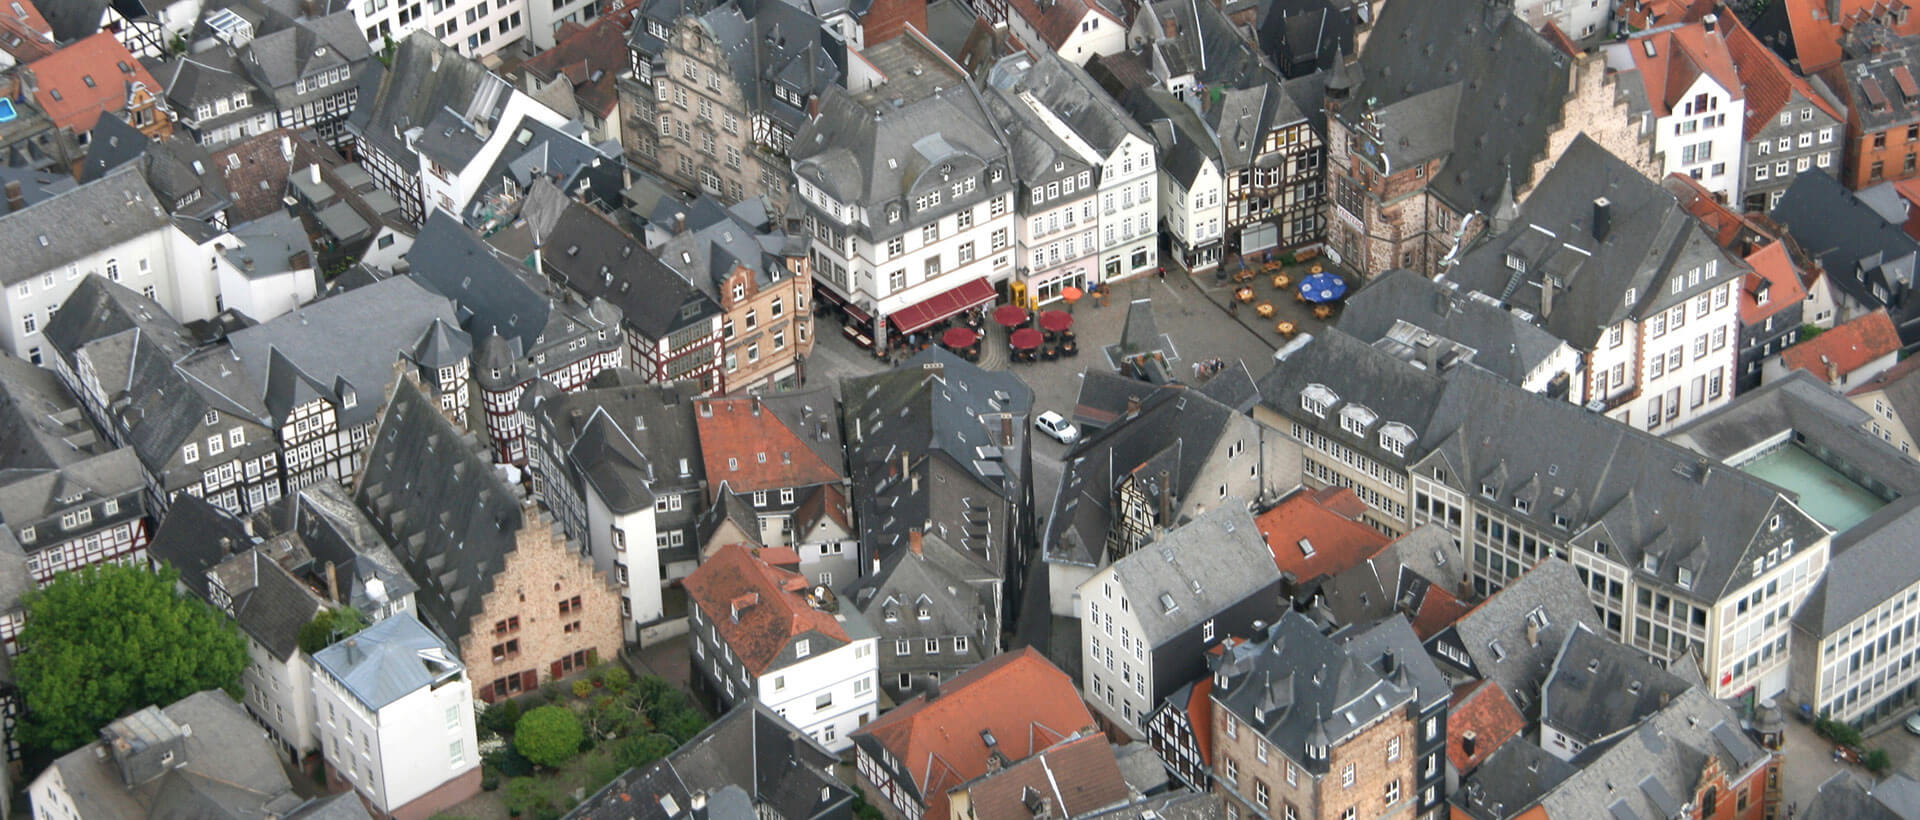 Luftaufnahmen vom Marburger historischen Rathaus, Credits Klaus Laaser